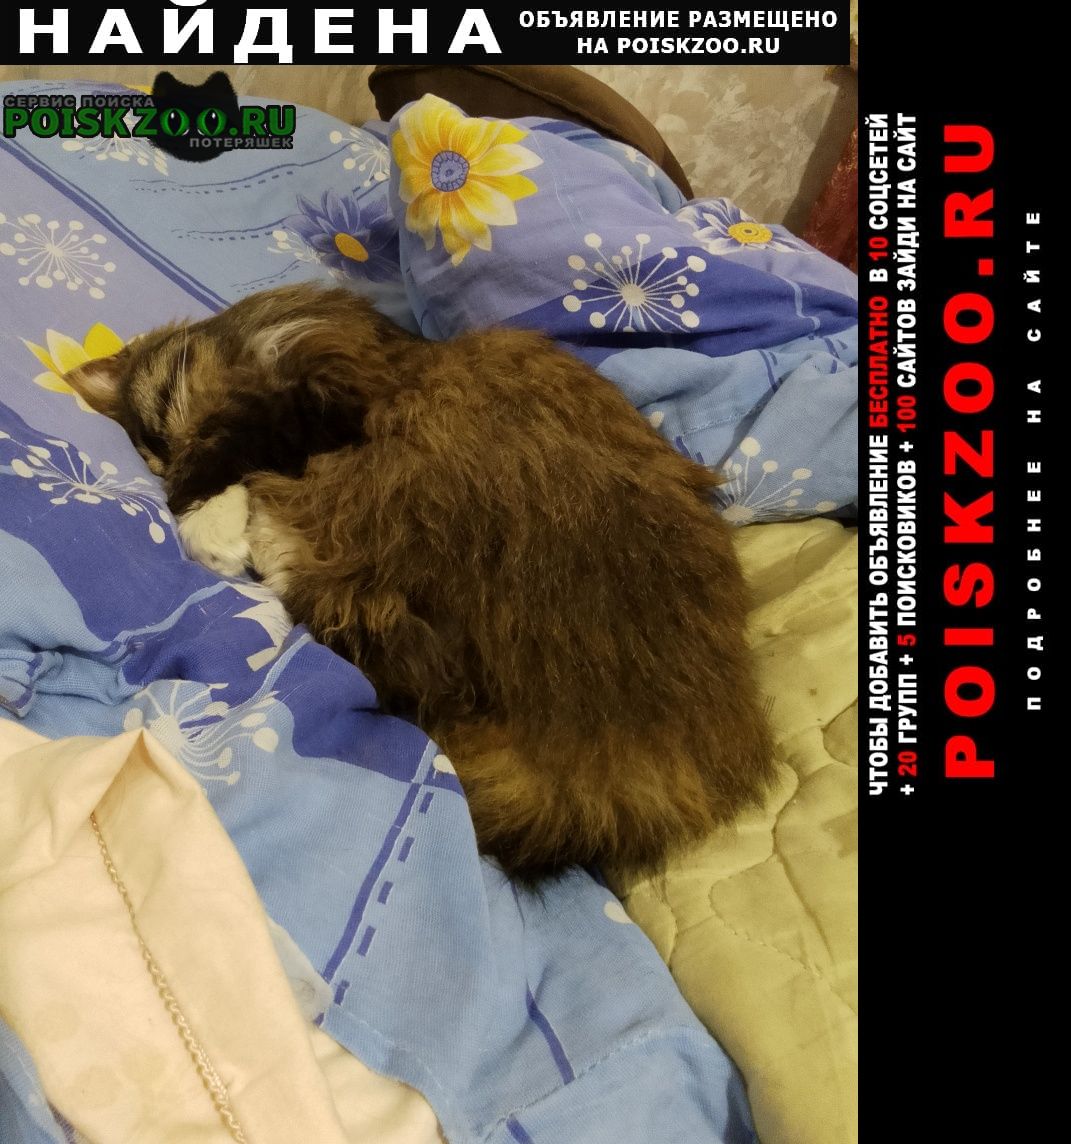 Найдена кошка рыся вернулась домой сама через 10 дней. Москва